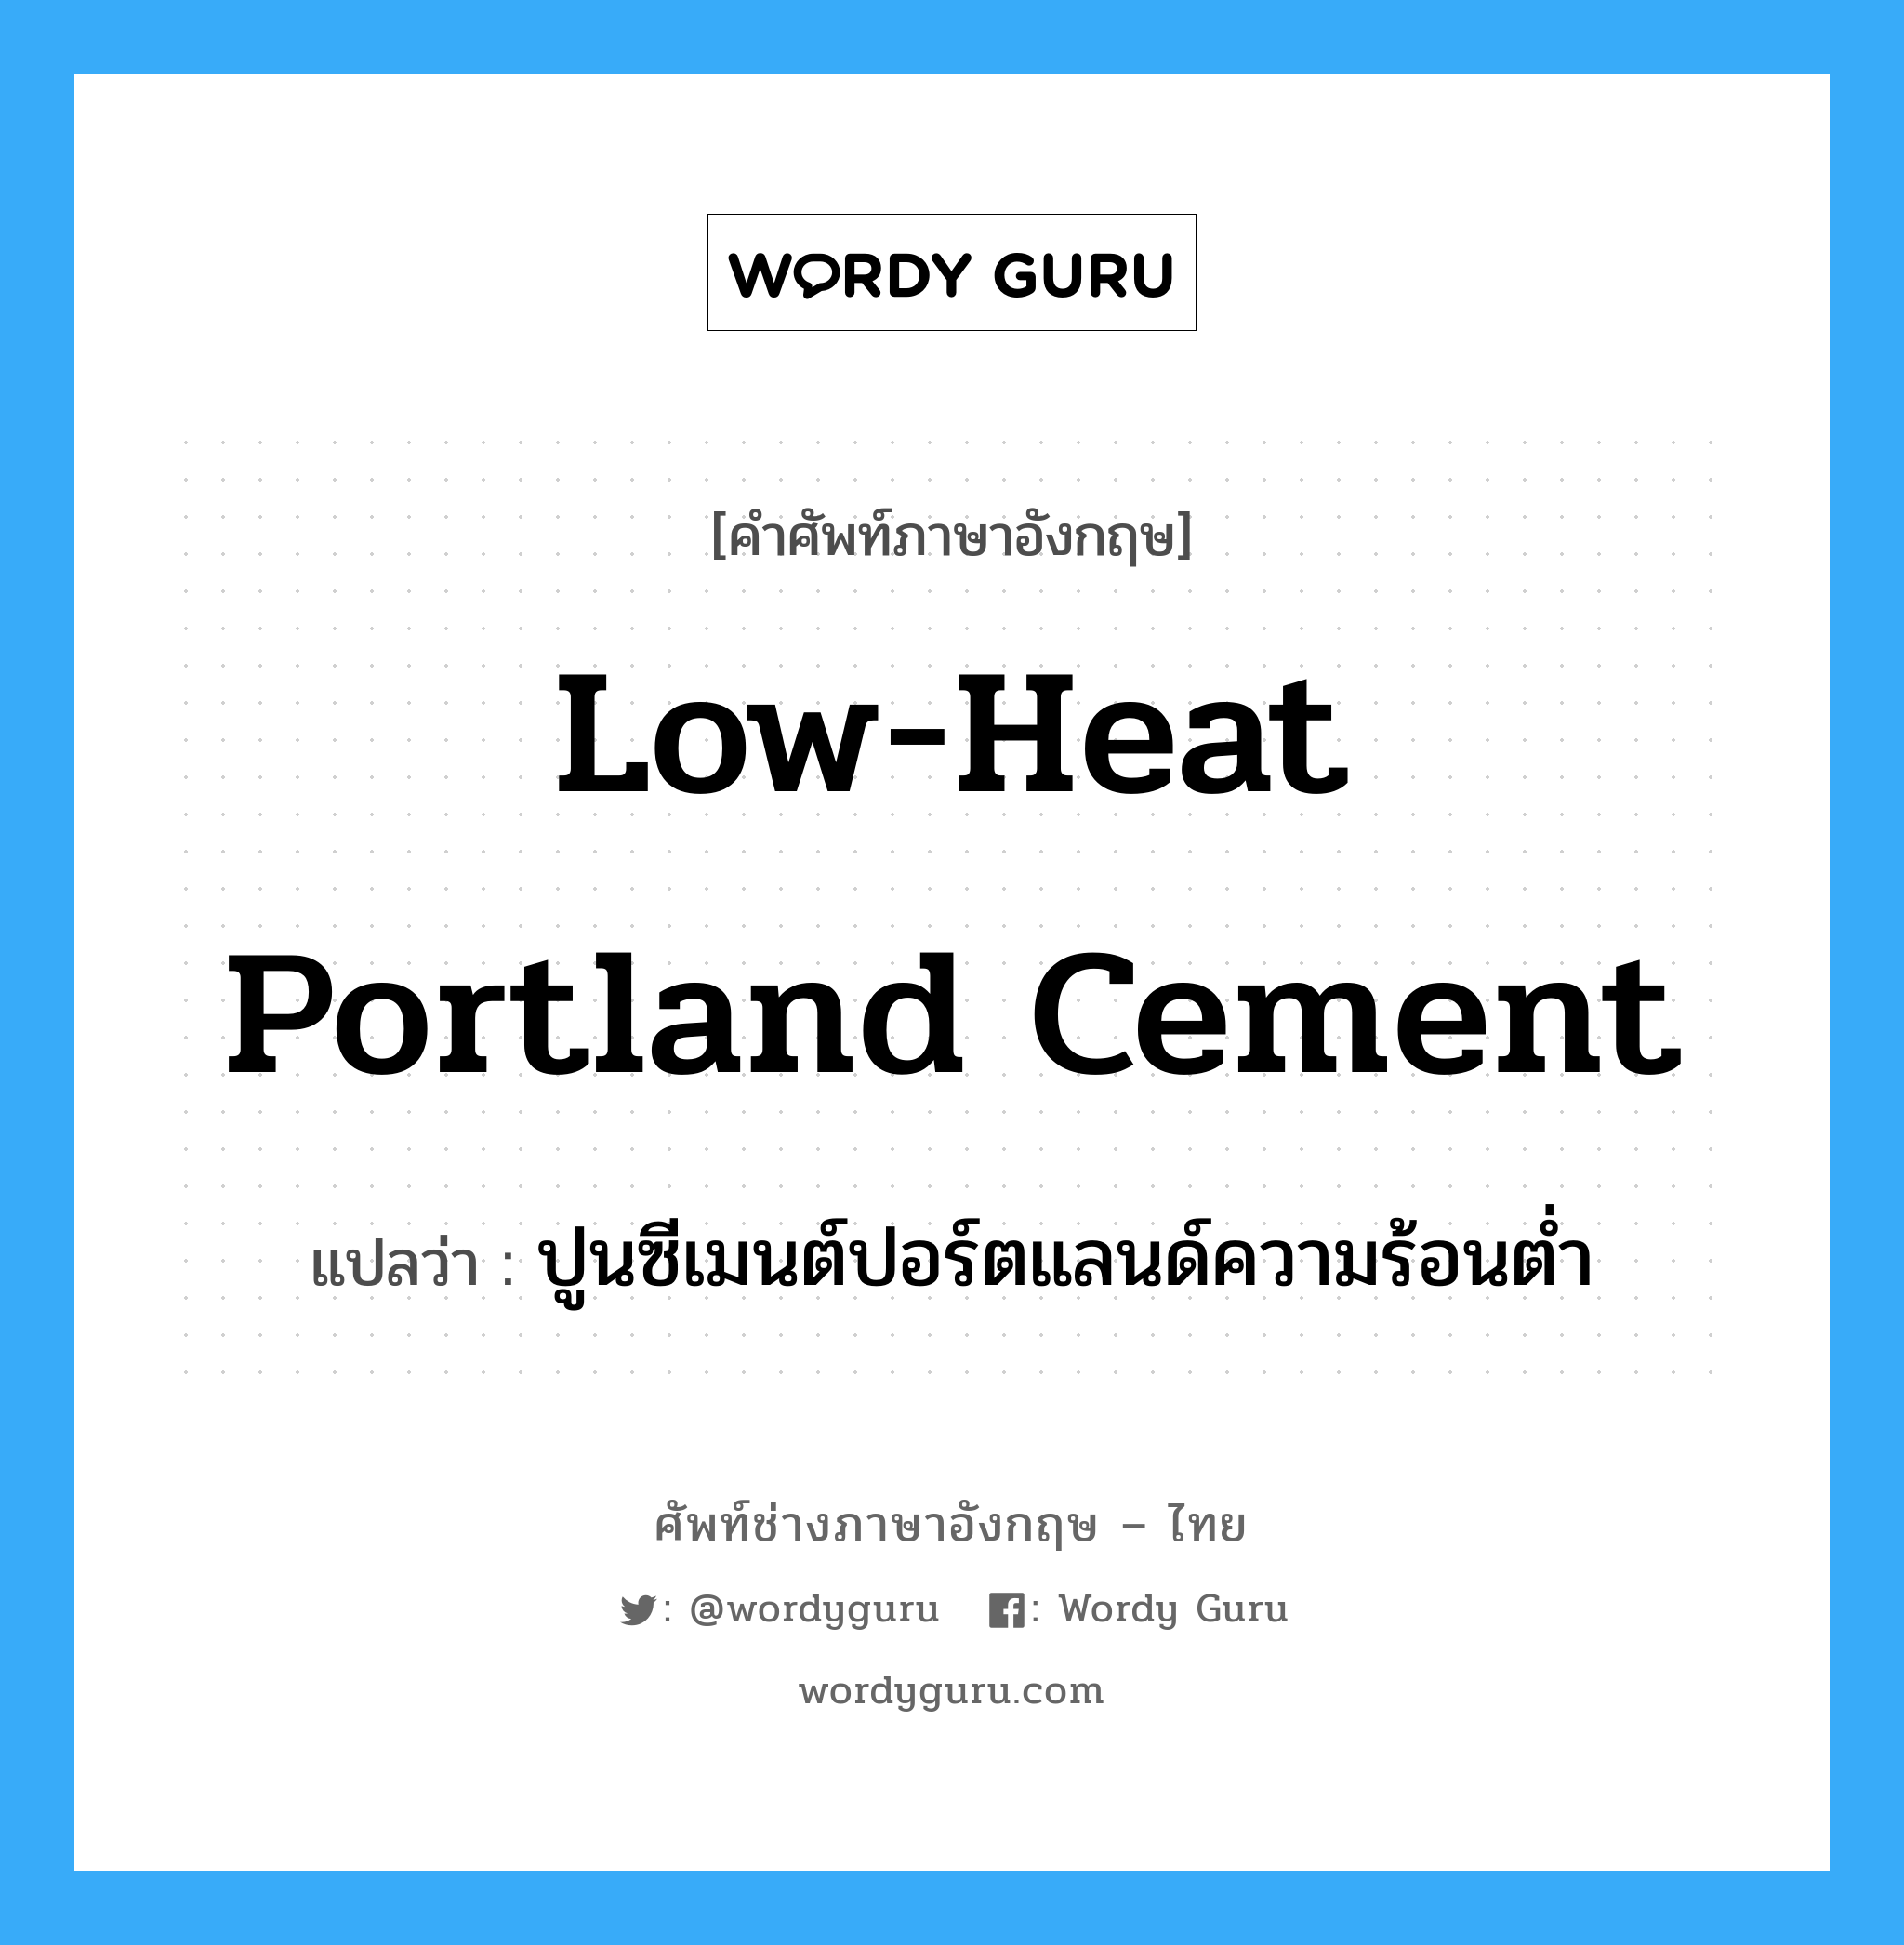 low-heat portland cement แปลว่า?, คำศัพท์ช่างภาษาอังกฤษ - ไทย low-heat portland cement คำศัพท์ภาษาอังกฤษ low-heat portland cement แปลว่า ปูนซีเมนต์ปอร์ตแลนด์ความร้อนต่ำ